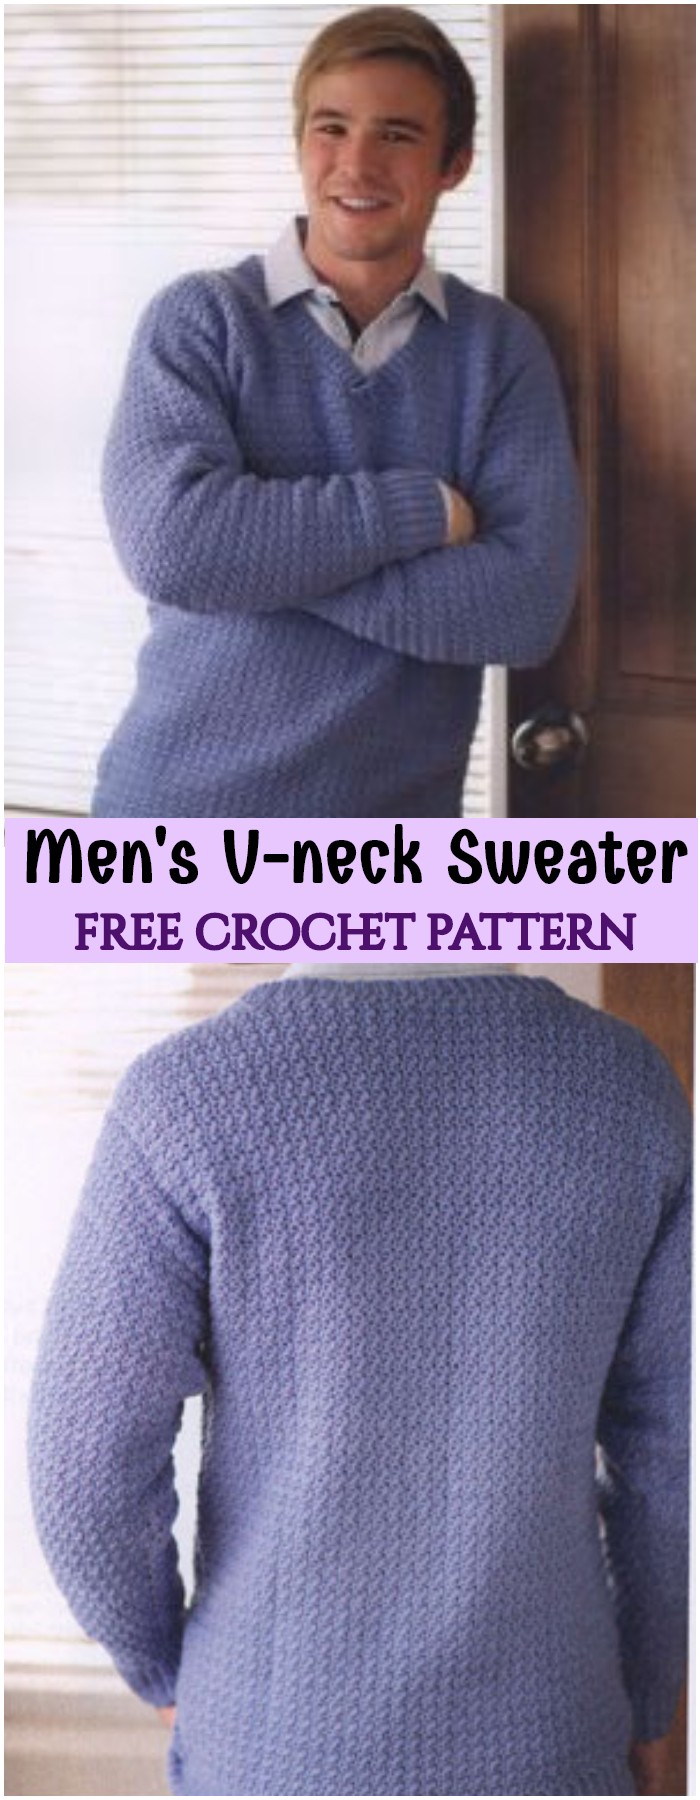 Crochet Men's V-neck Sweater